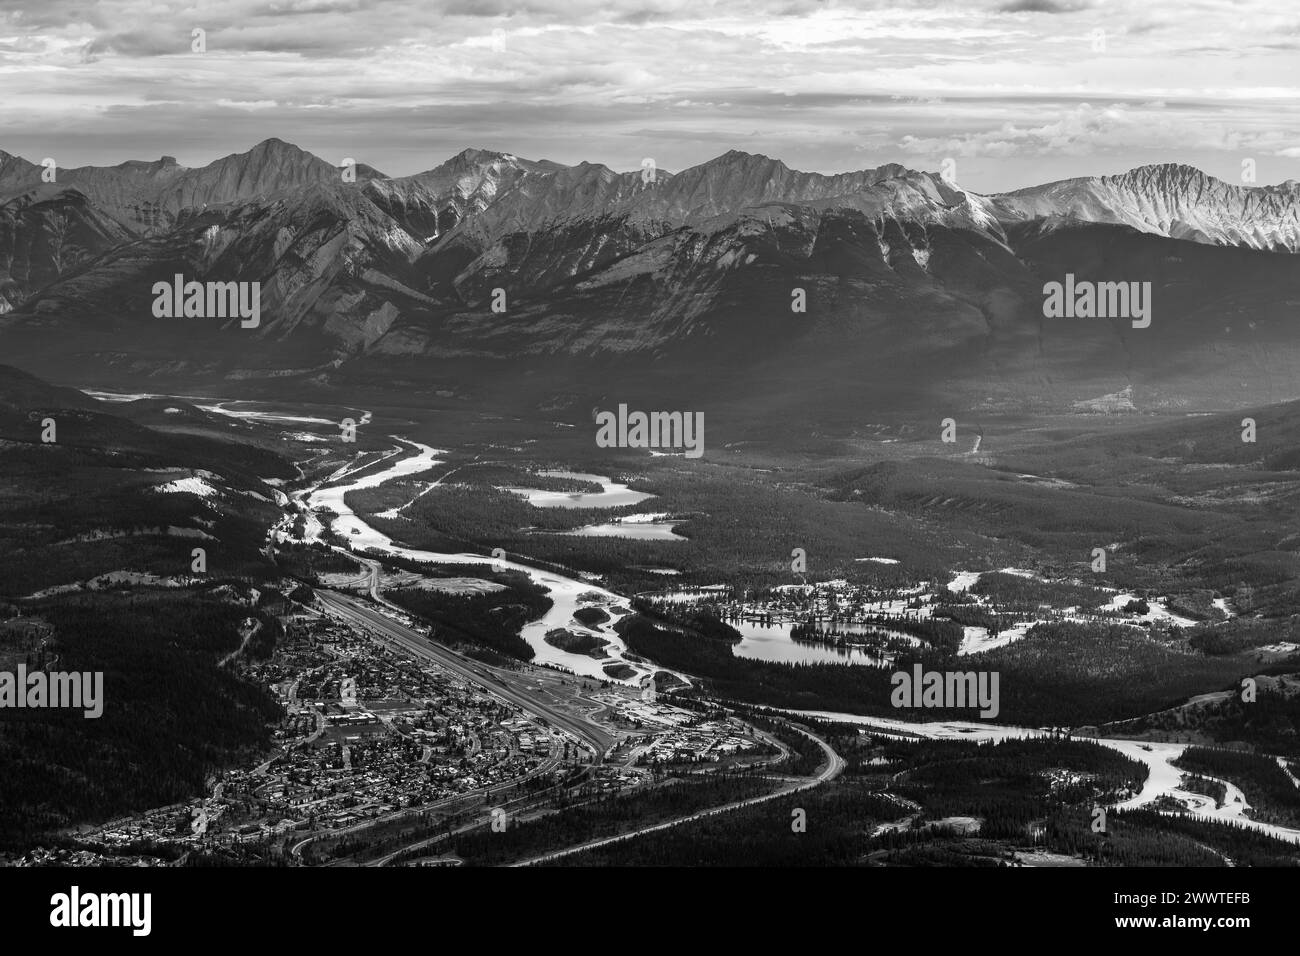 Vue aérienne de la ville de Jasper et de la rivière Athabasca en noir et blanc, parc national Jasper, Canada. Banque D'Images